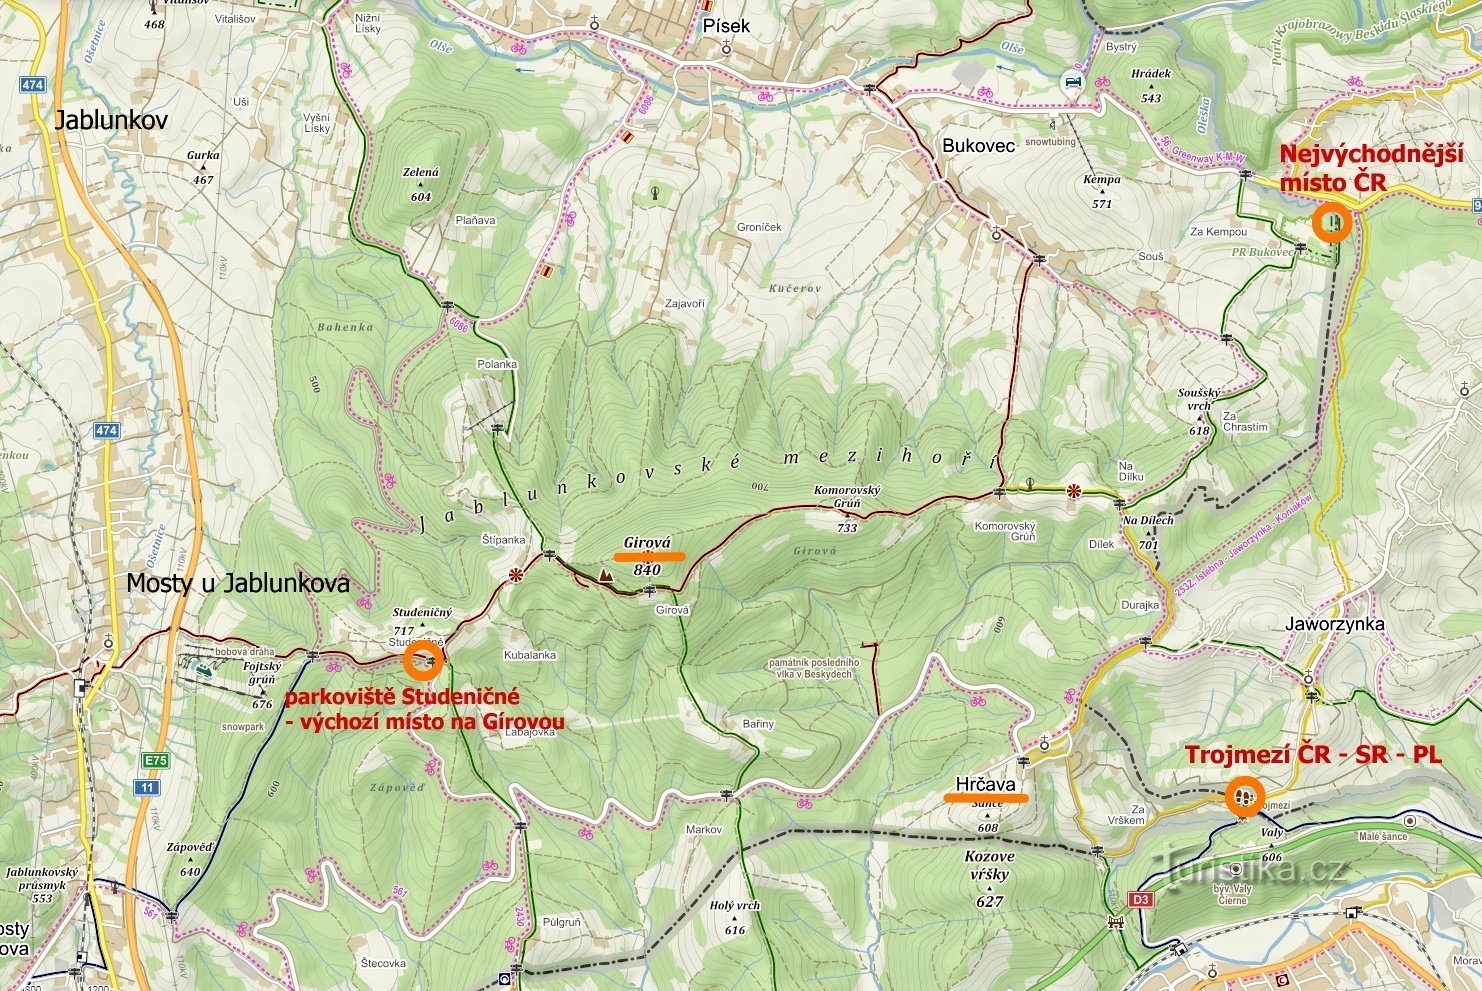 karta över besökta platser: Tjeckiens östligaste punkt, Hrčava - Trojmezí, Jablunkovské m